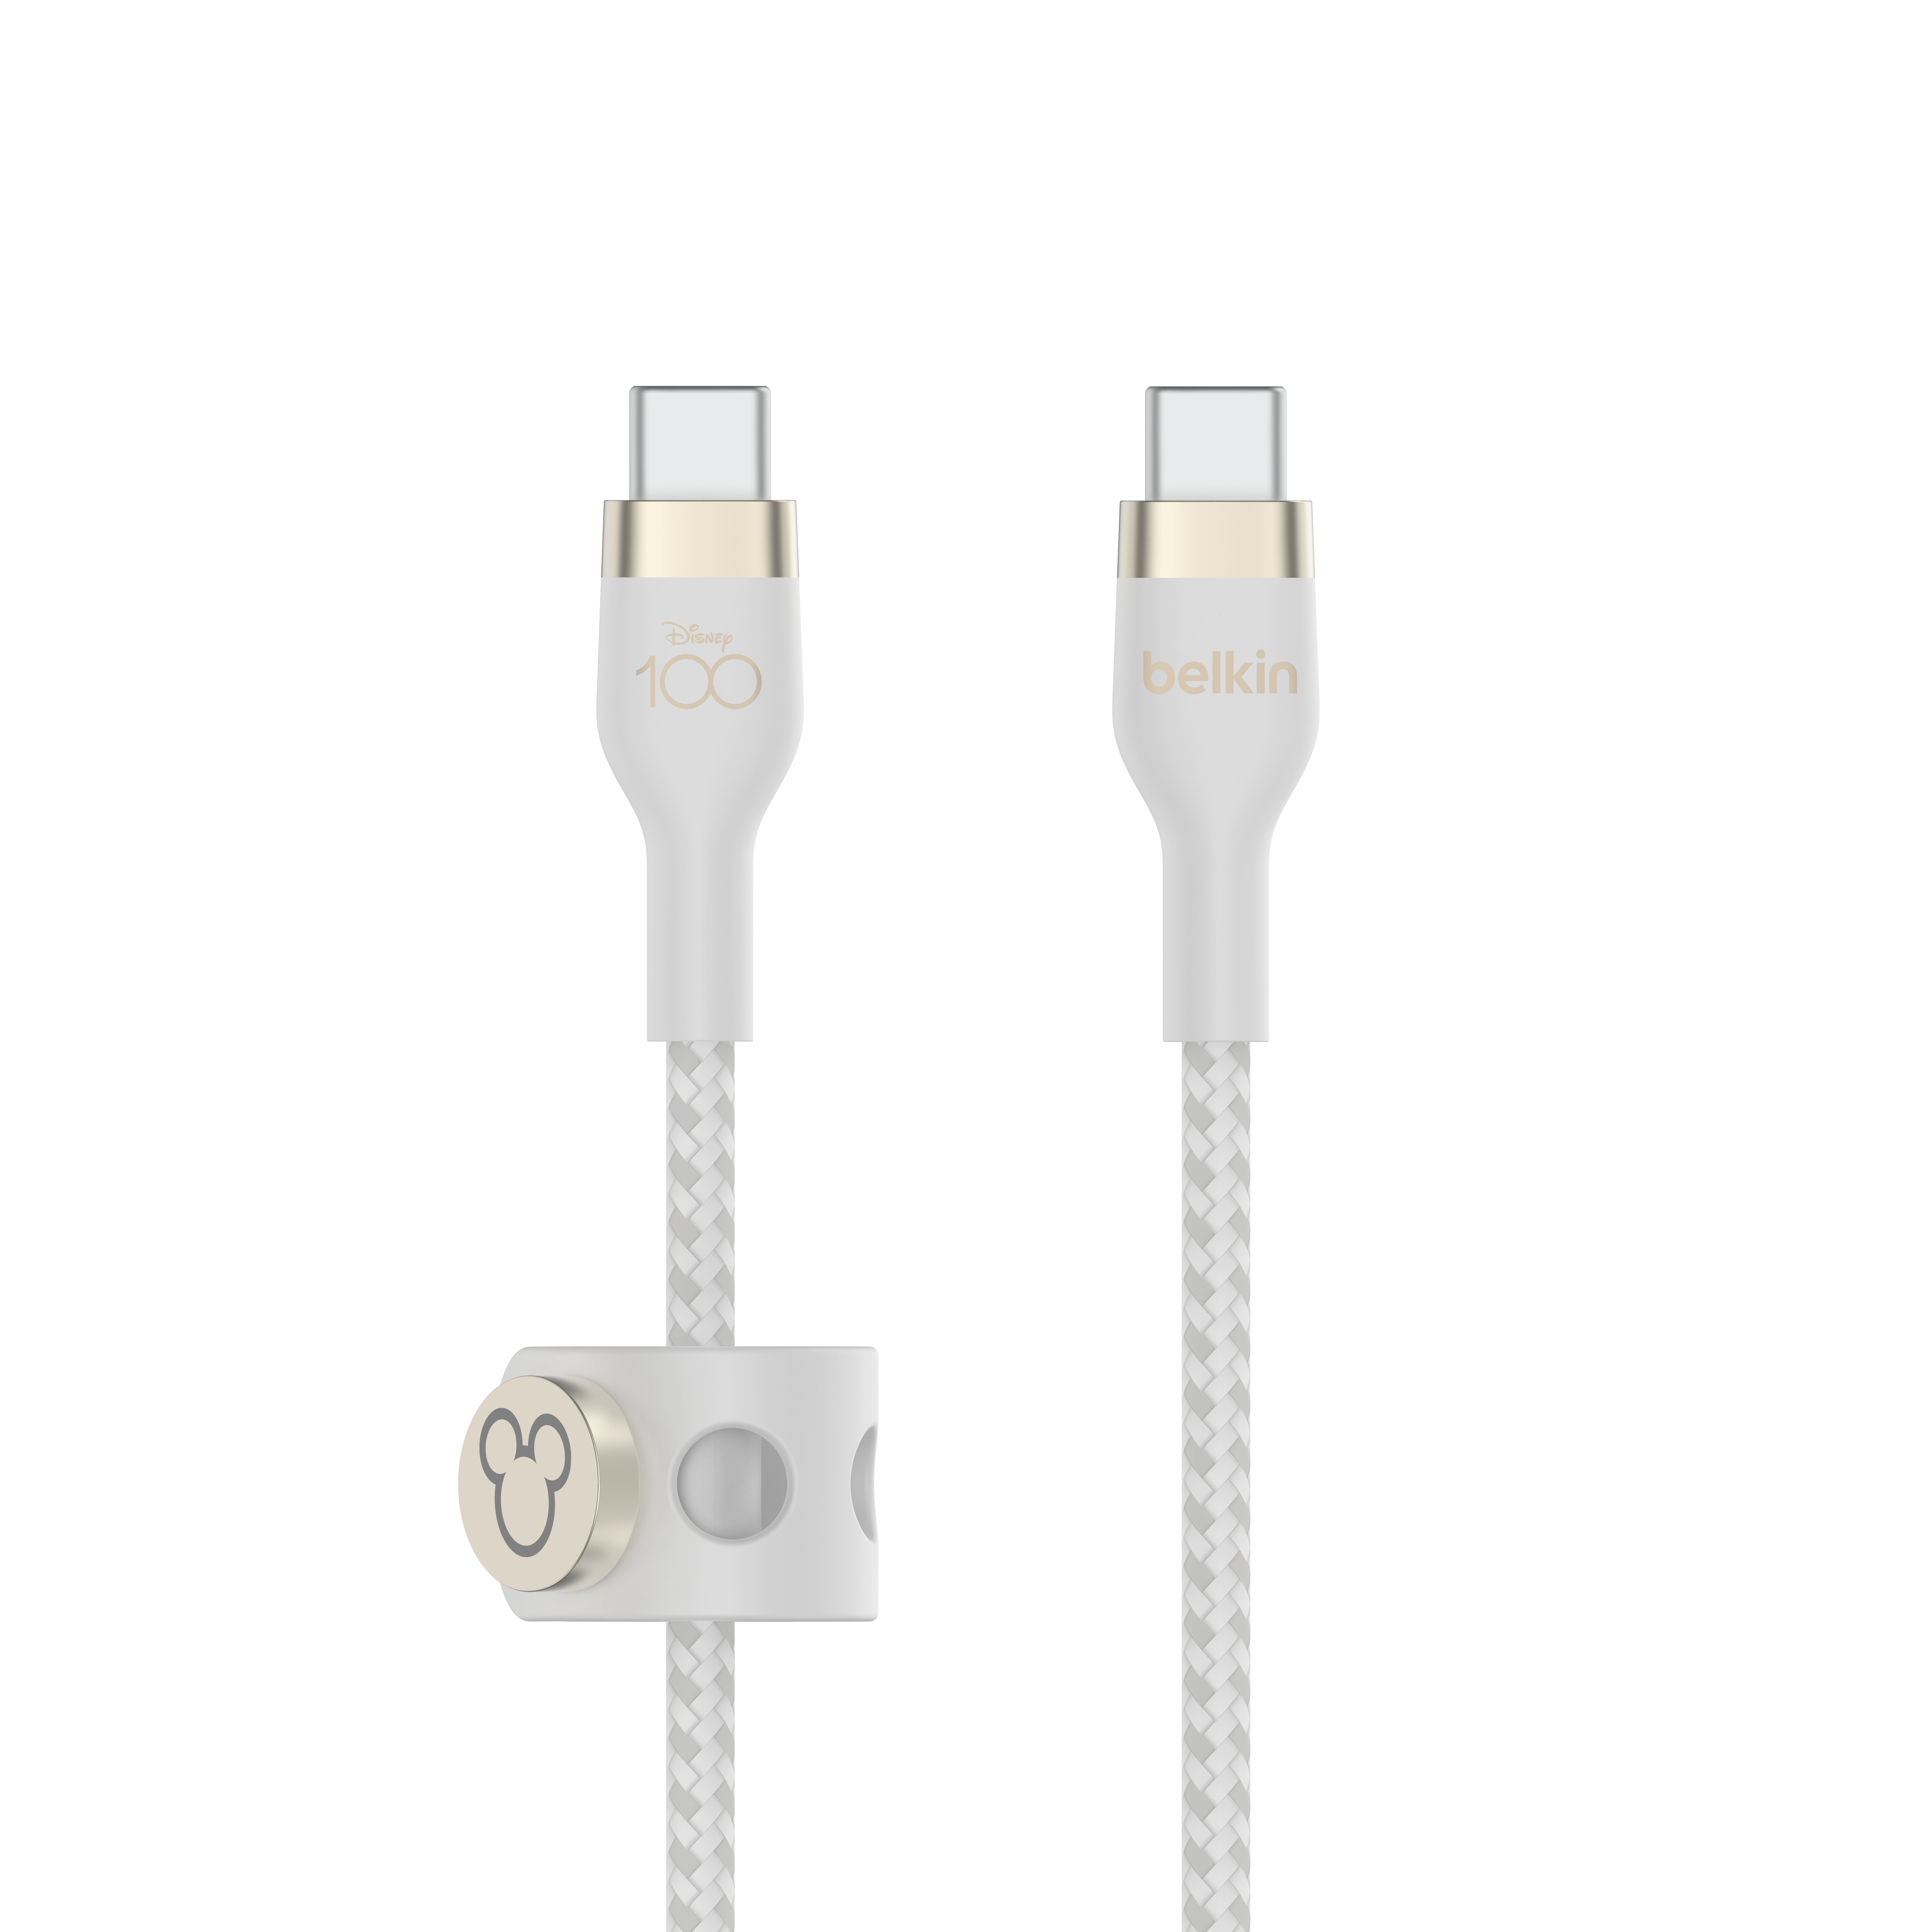 BoostCharge Pro Flex USB-C to USB-C Cable (1m)